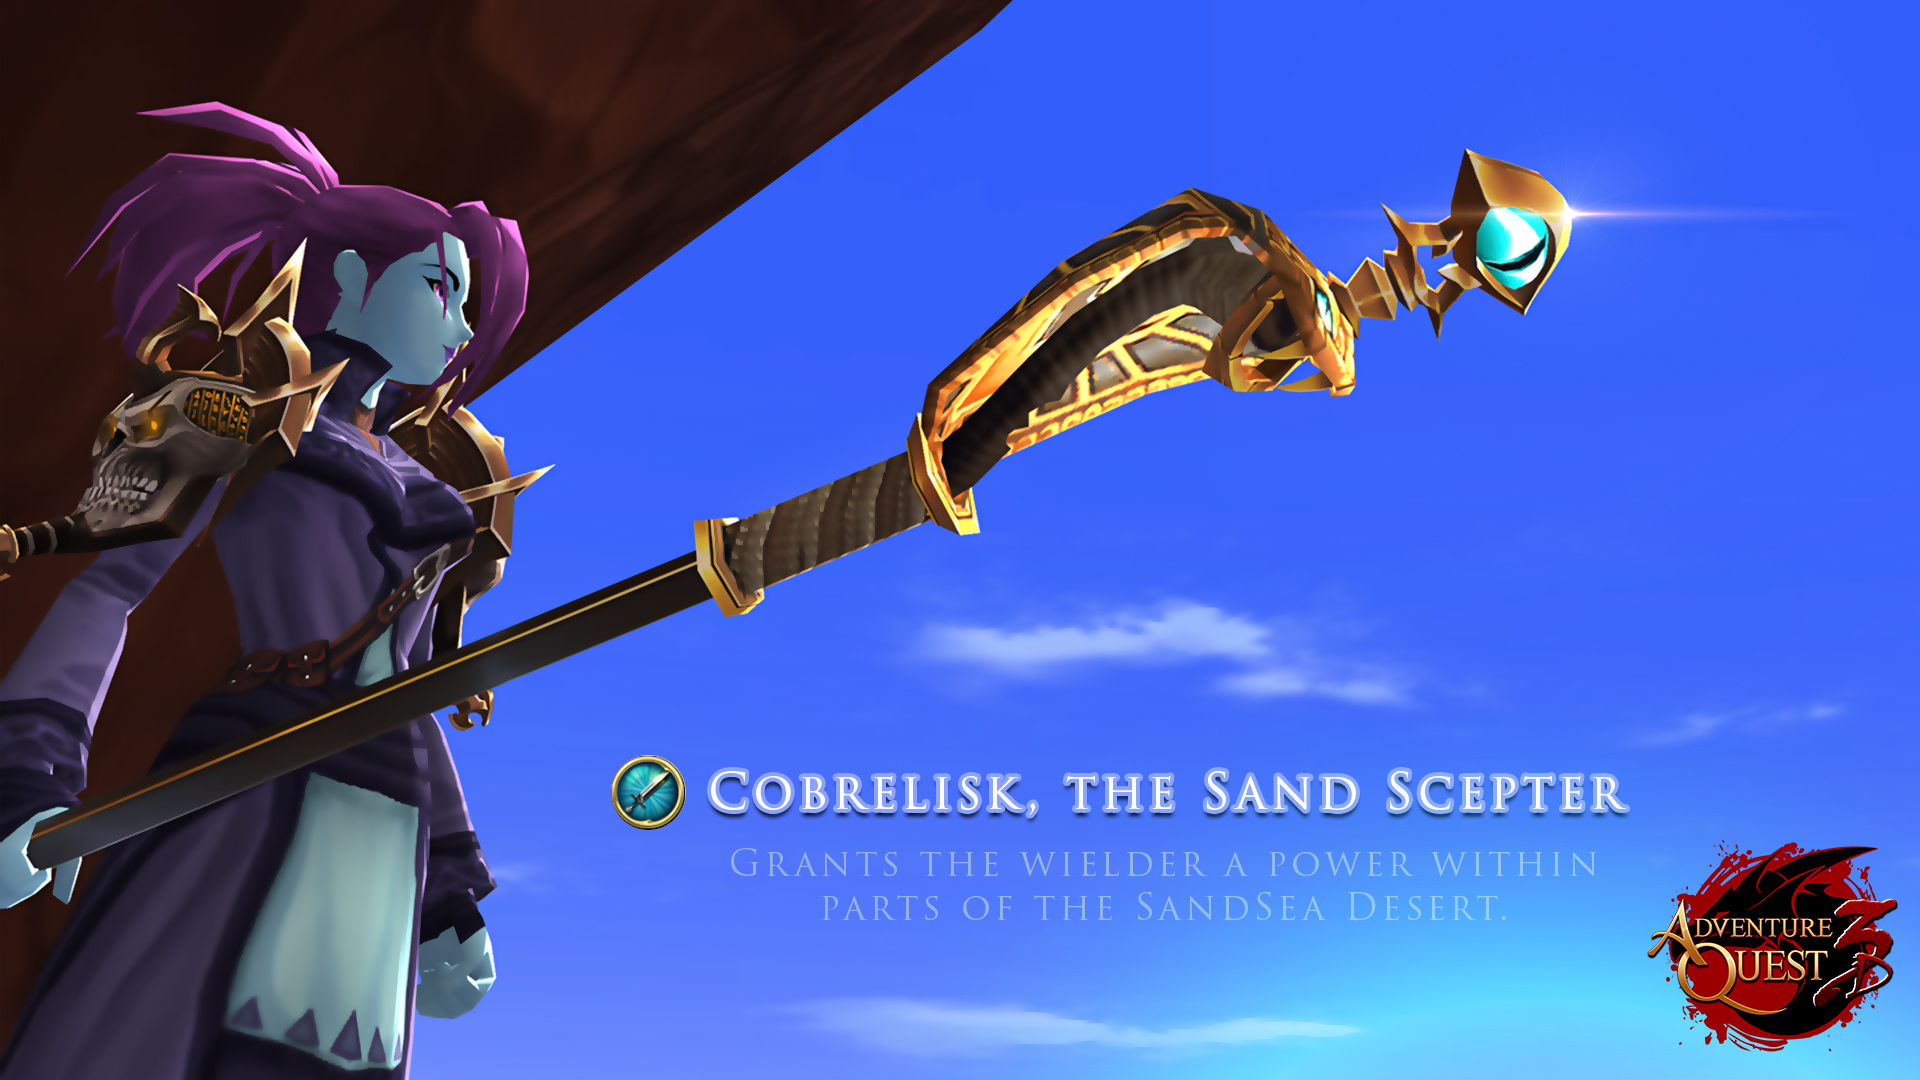 Cobralisk, the Sand Scepter